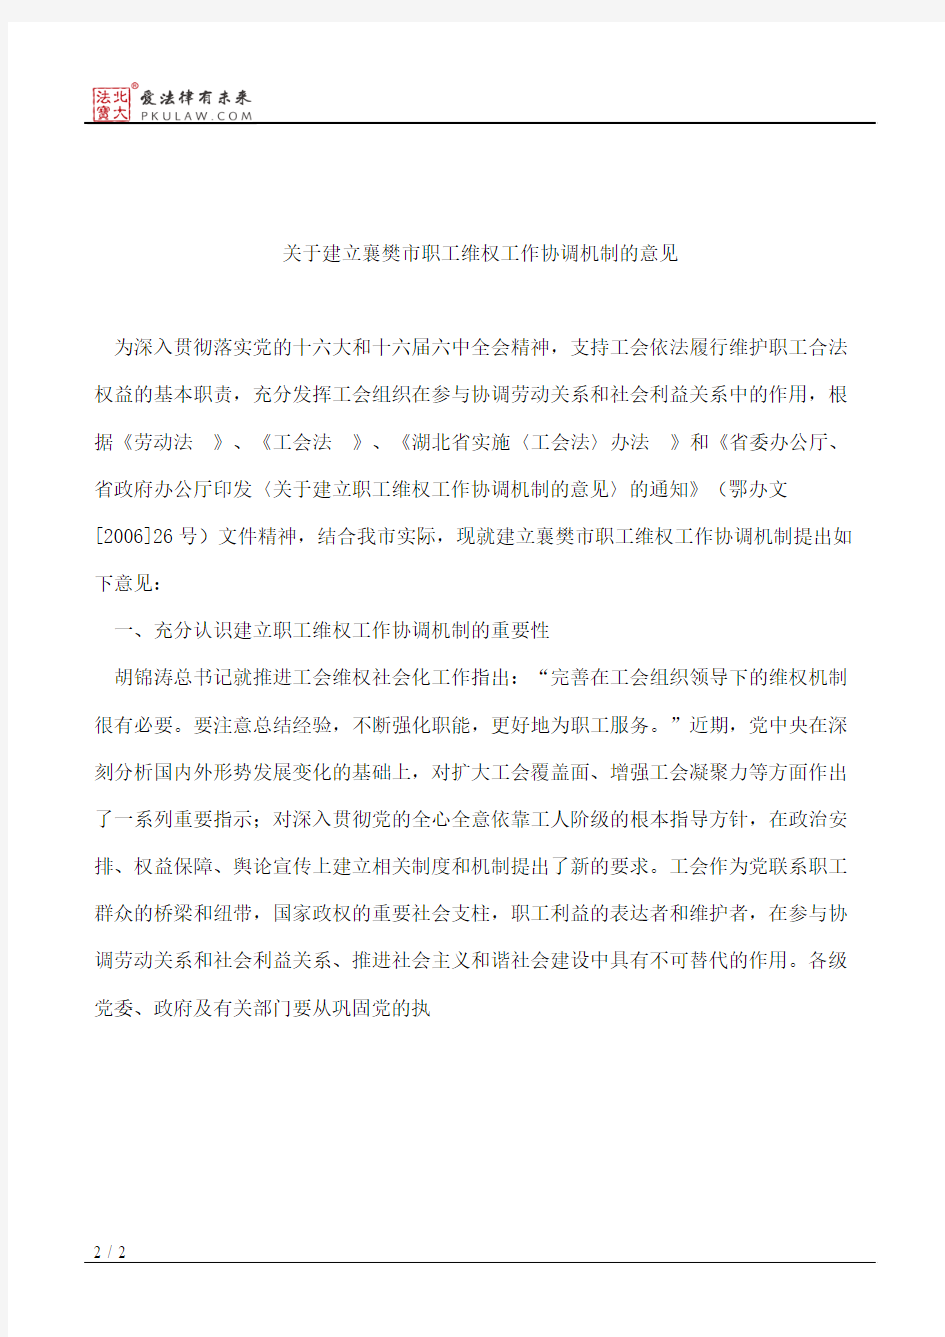 中共襄樊市委办公室、襄樊市人民政府办公室印发《关于建立襄樊市